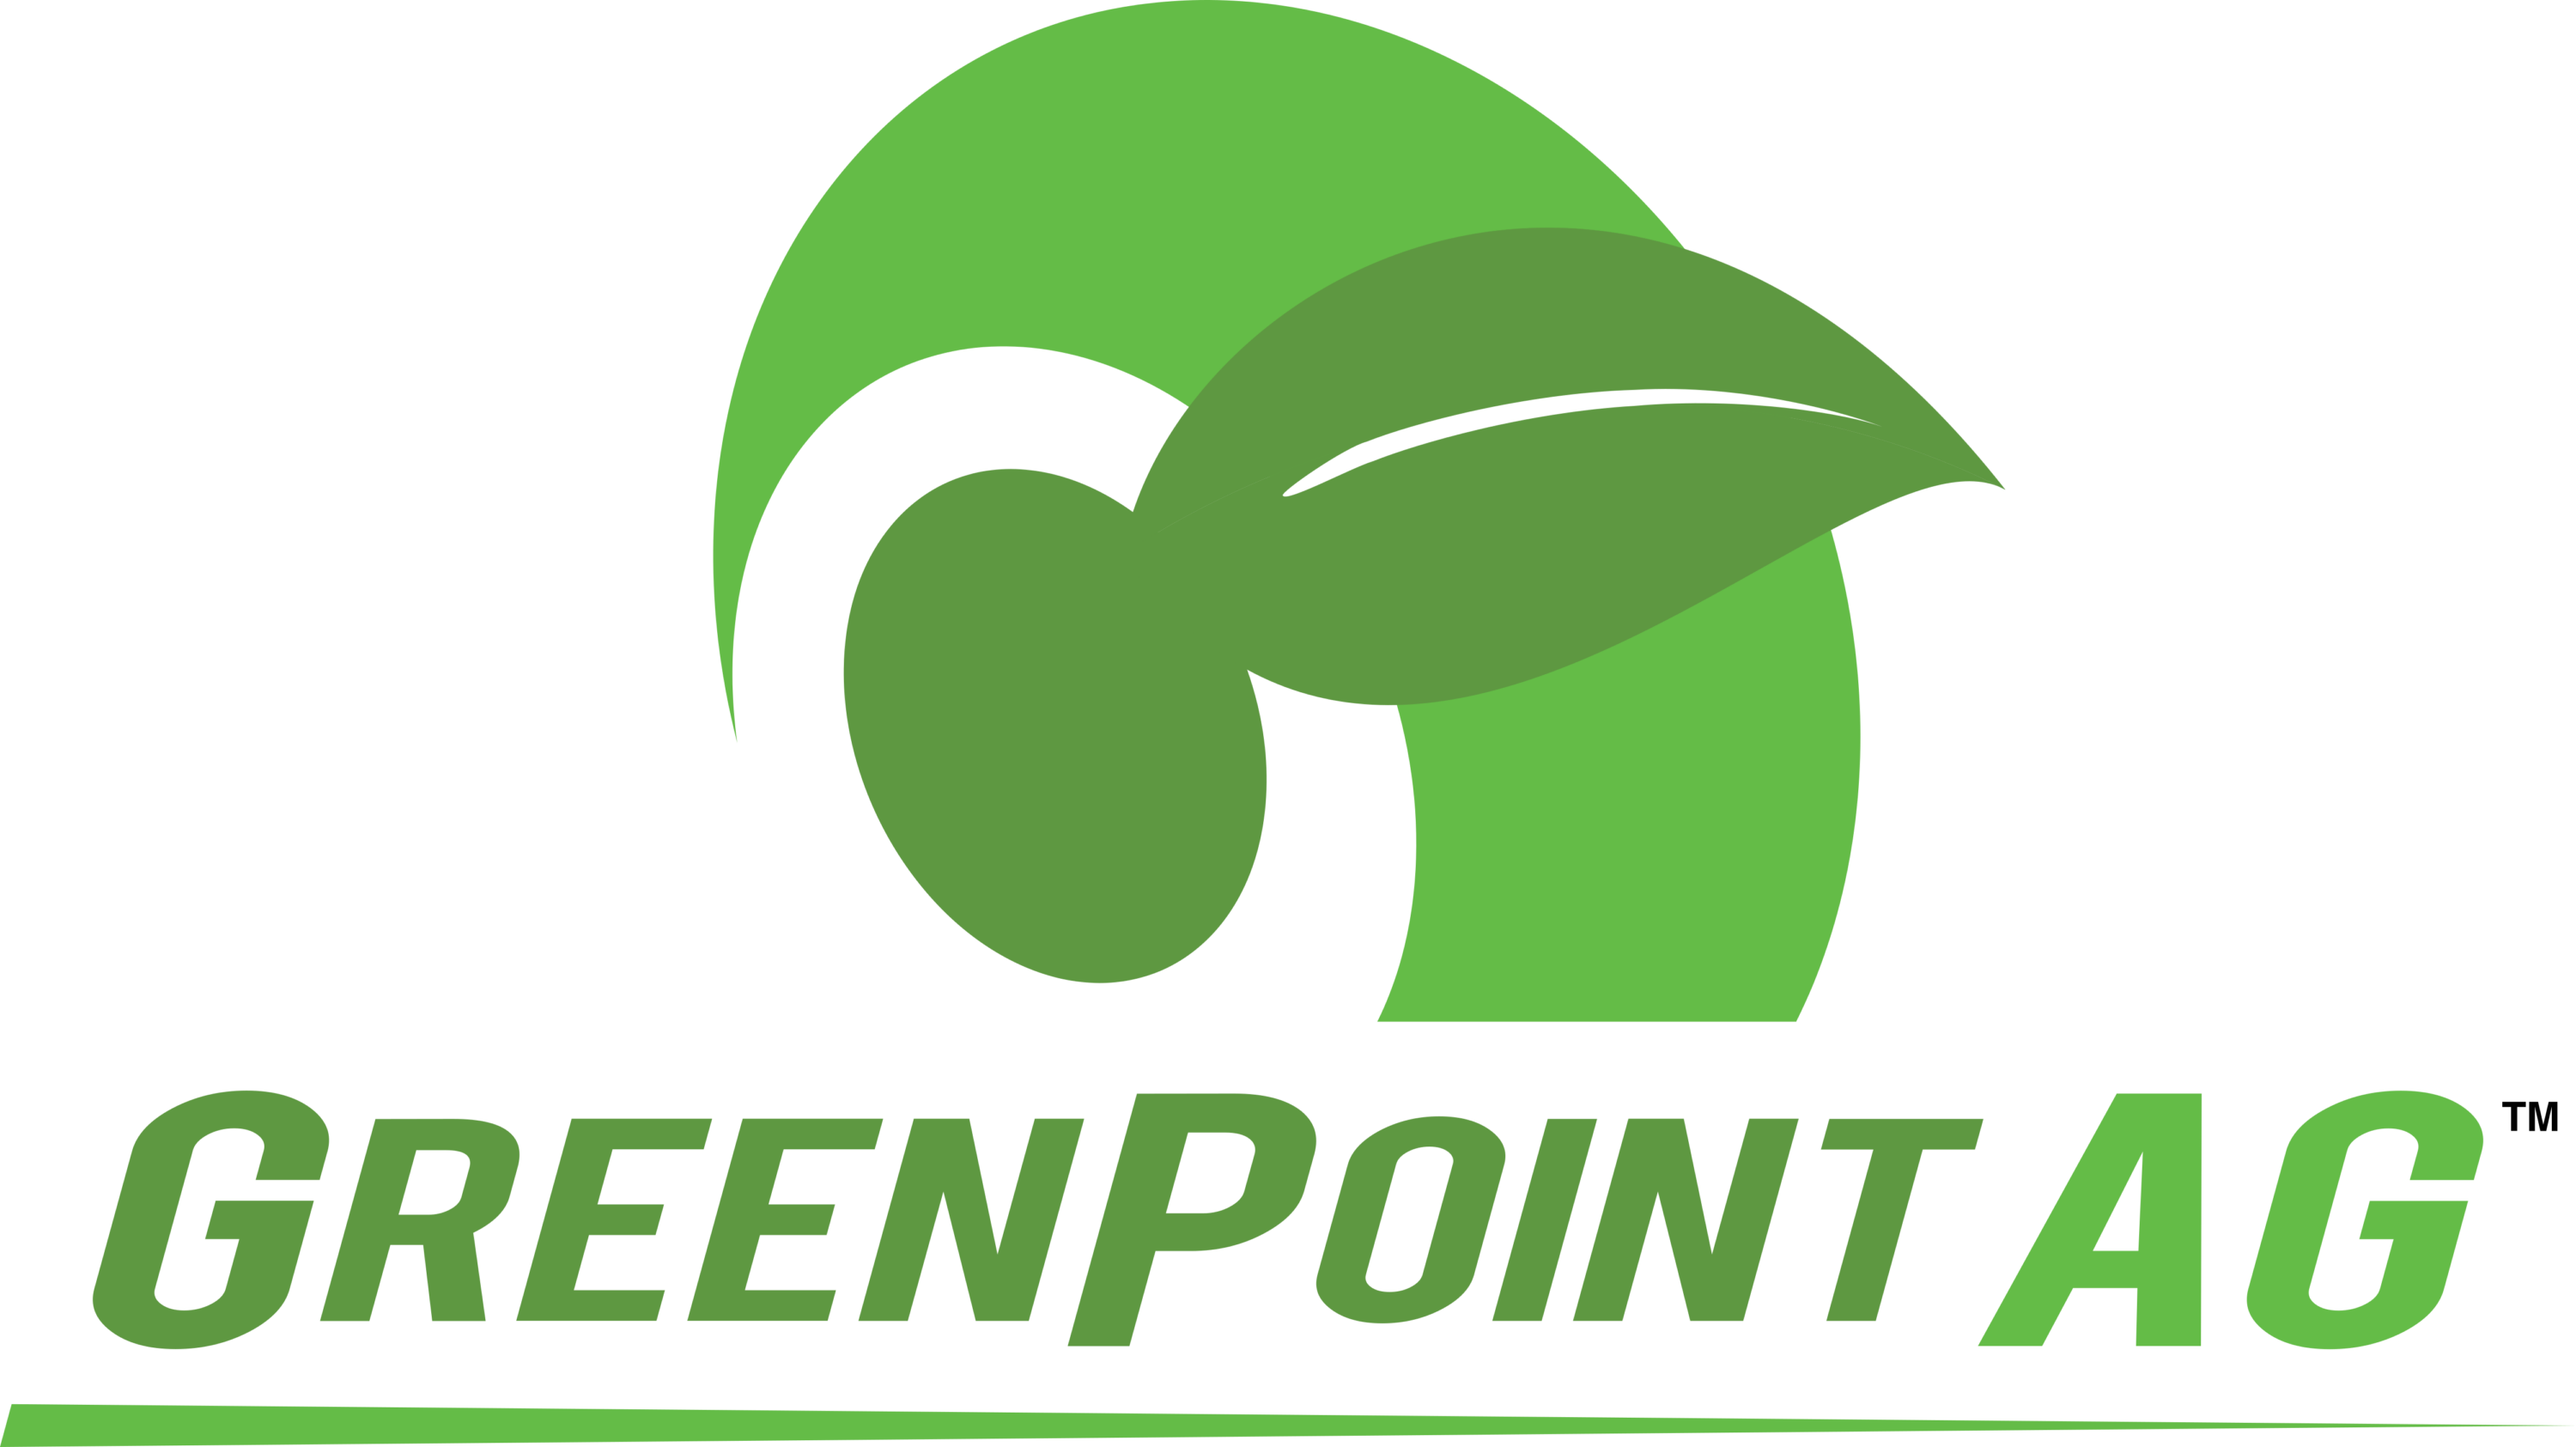 Greenpoint AG Logo